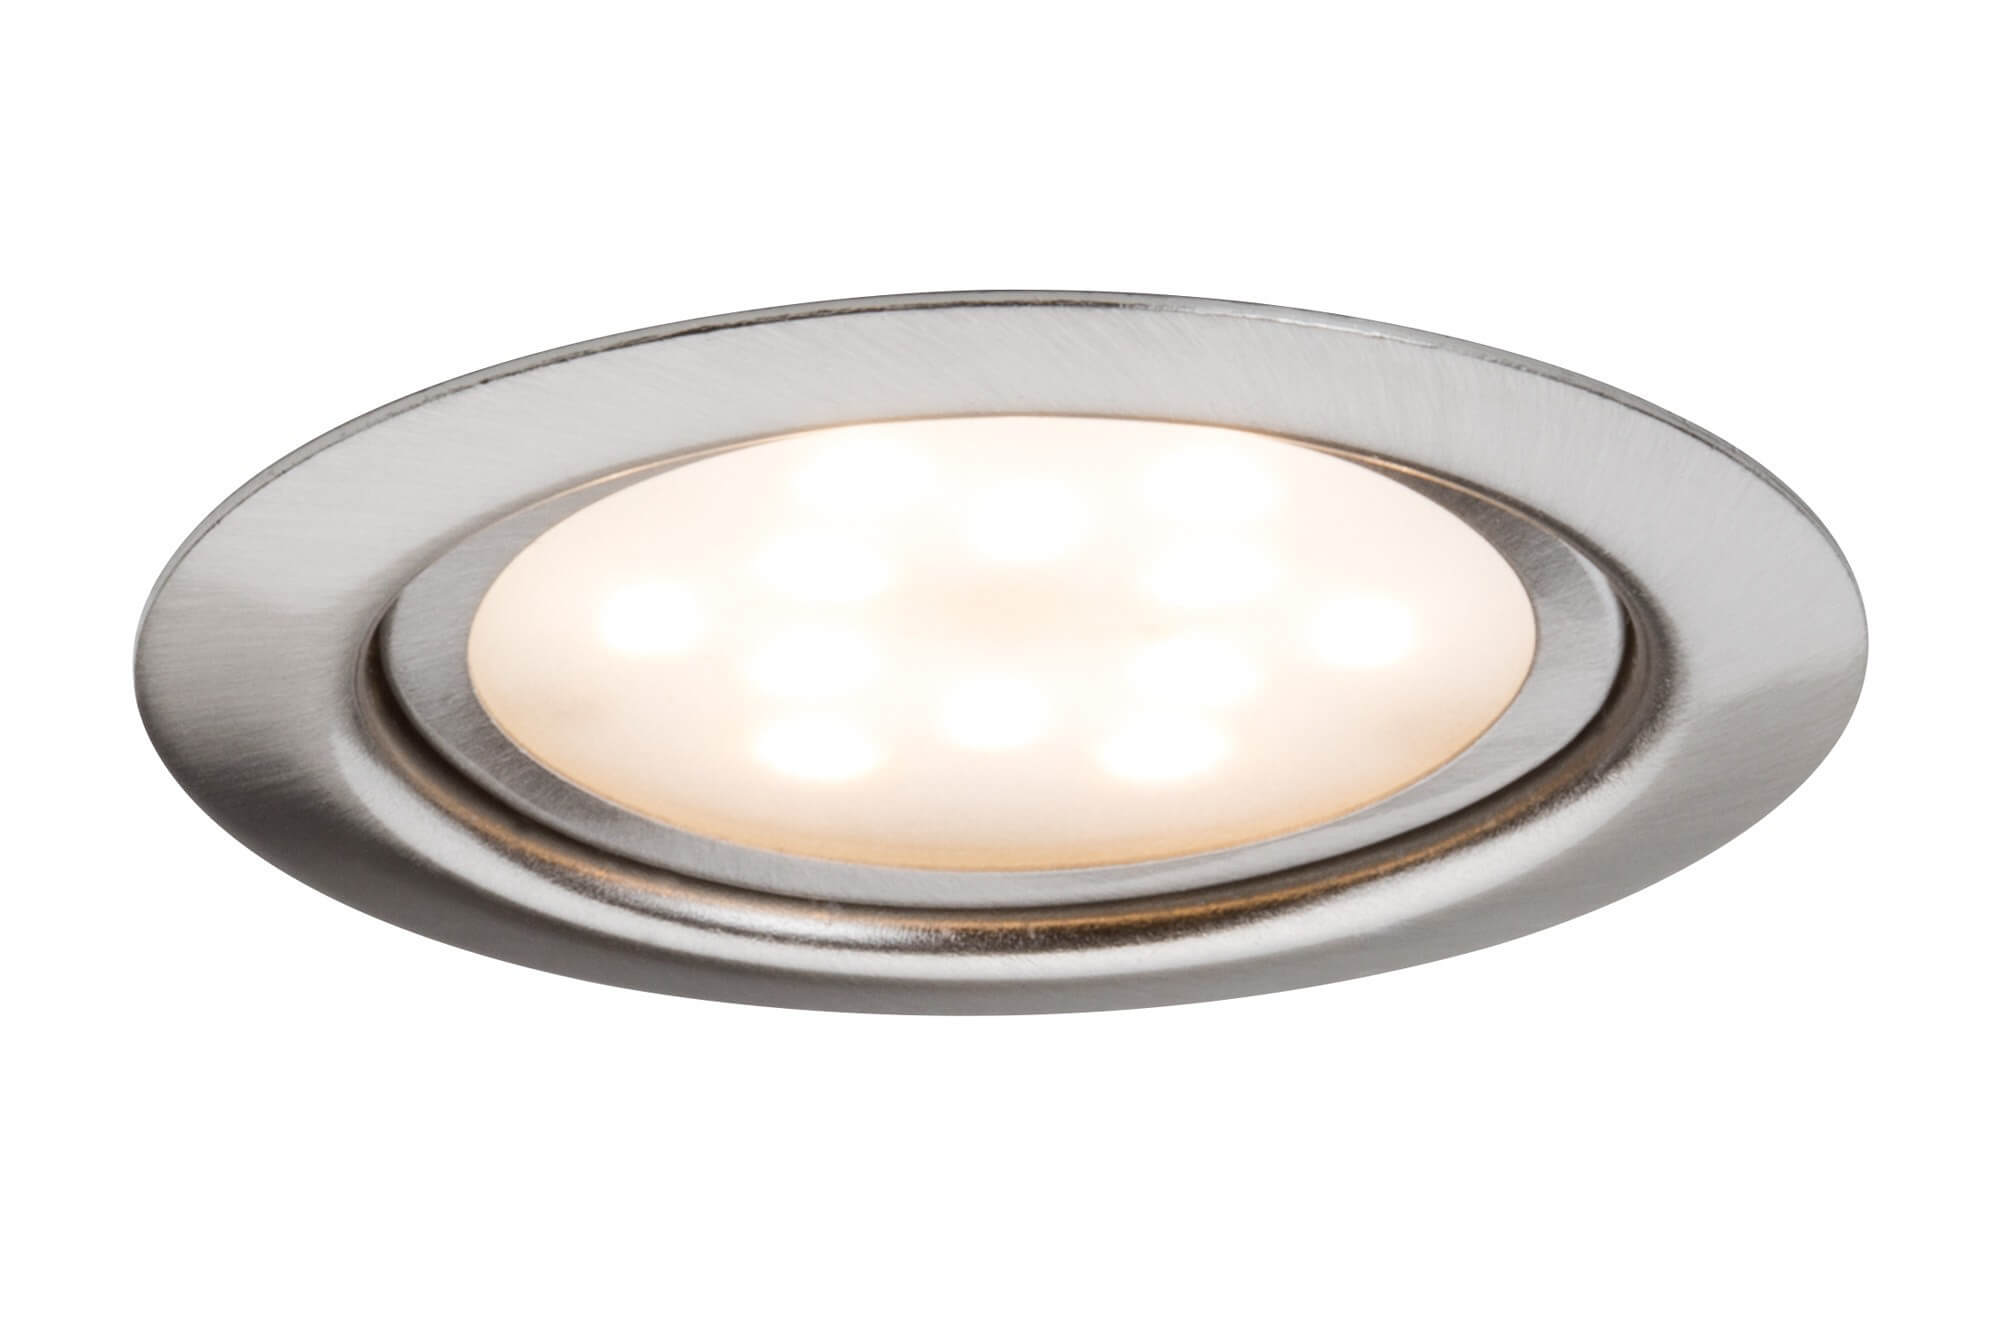 Luminaire LED : Luminaire LED carré, plat à éclairage direct